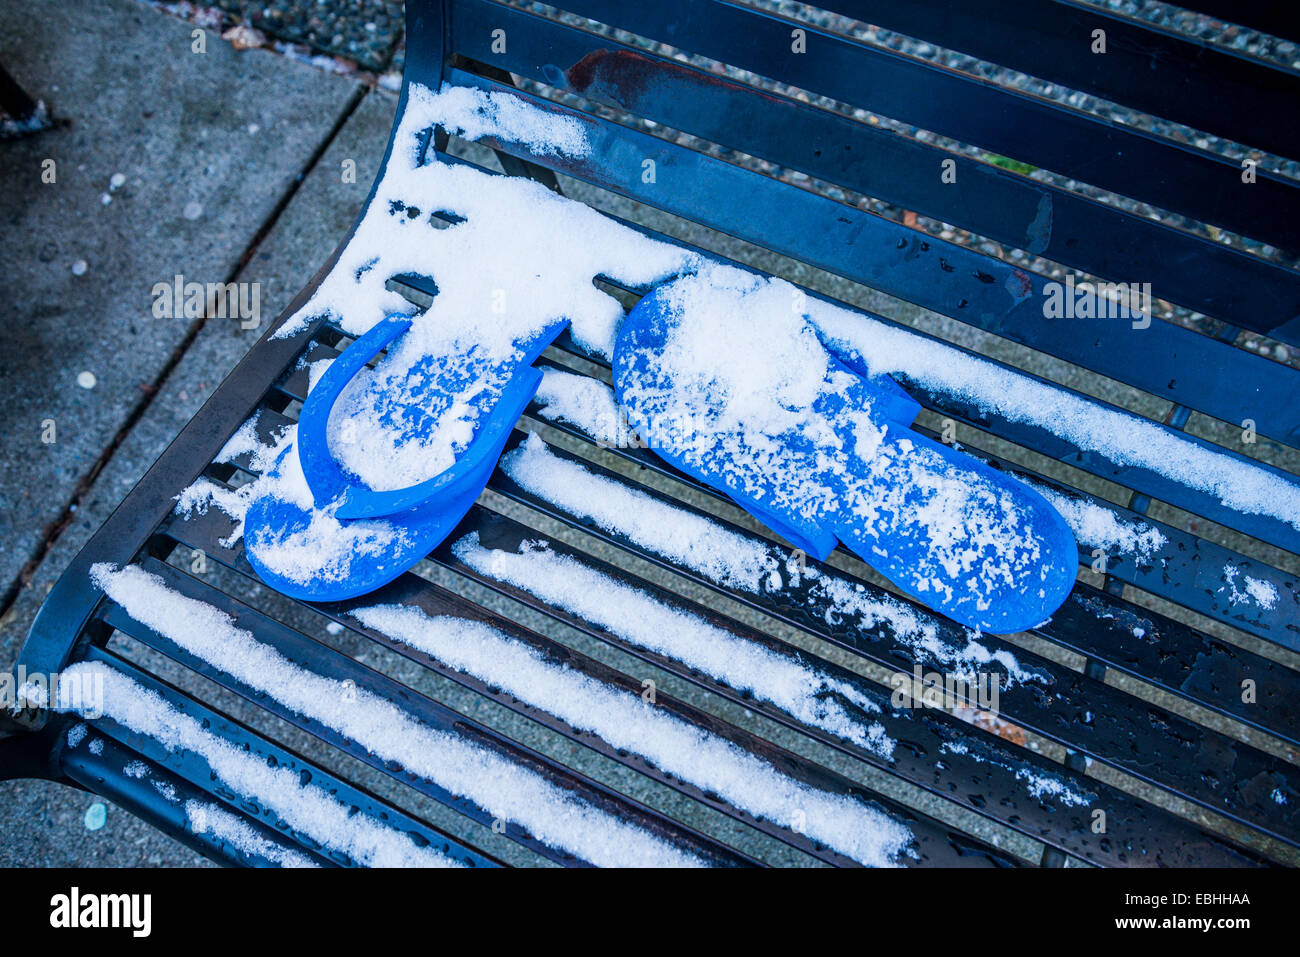 Flip flop sandals laissés sur le banc de neige. Banque D'Images